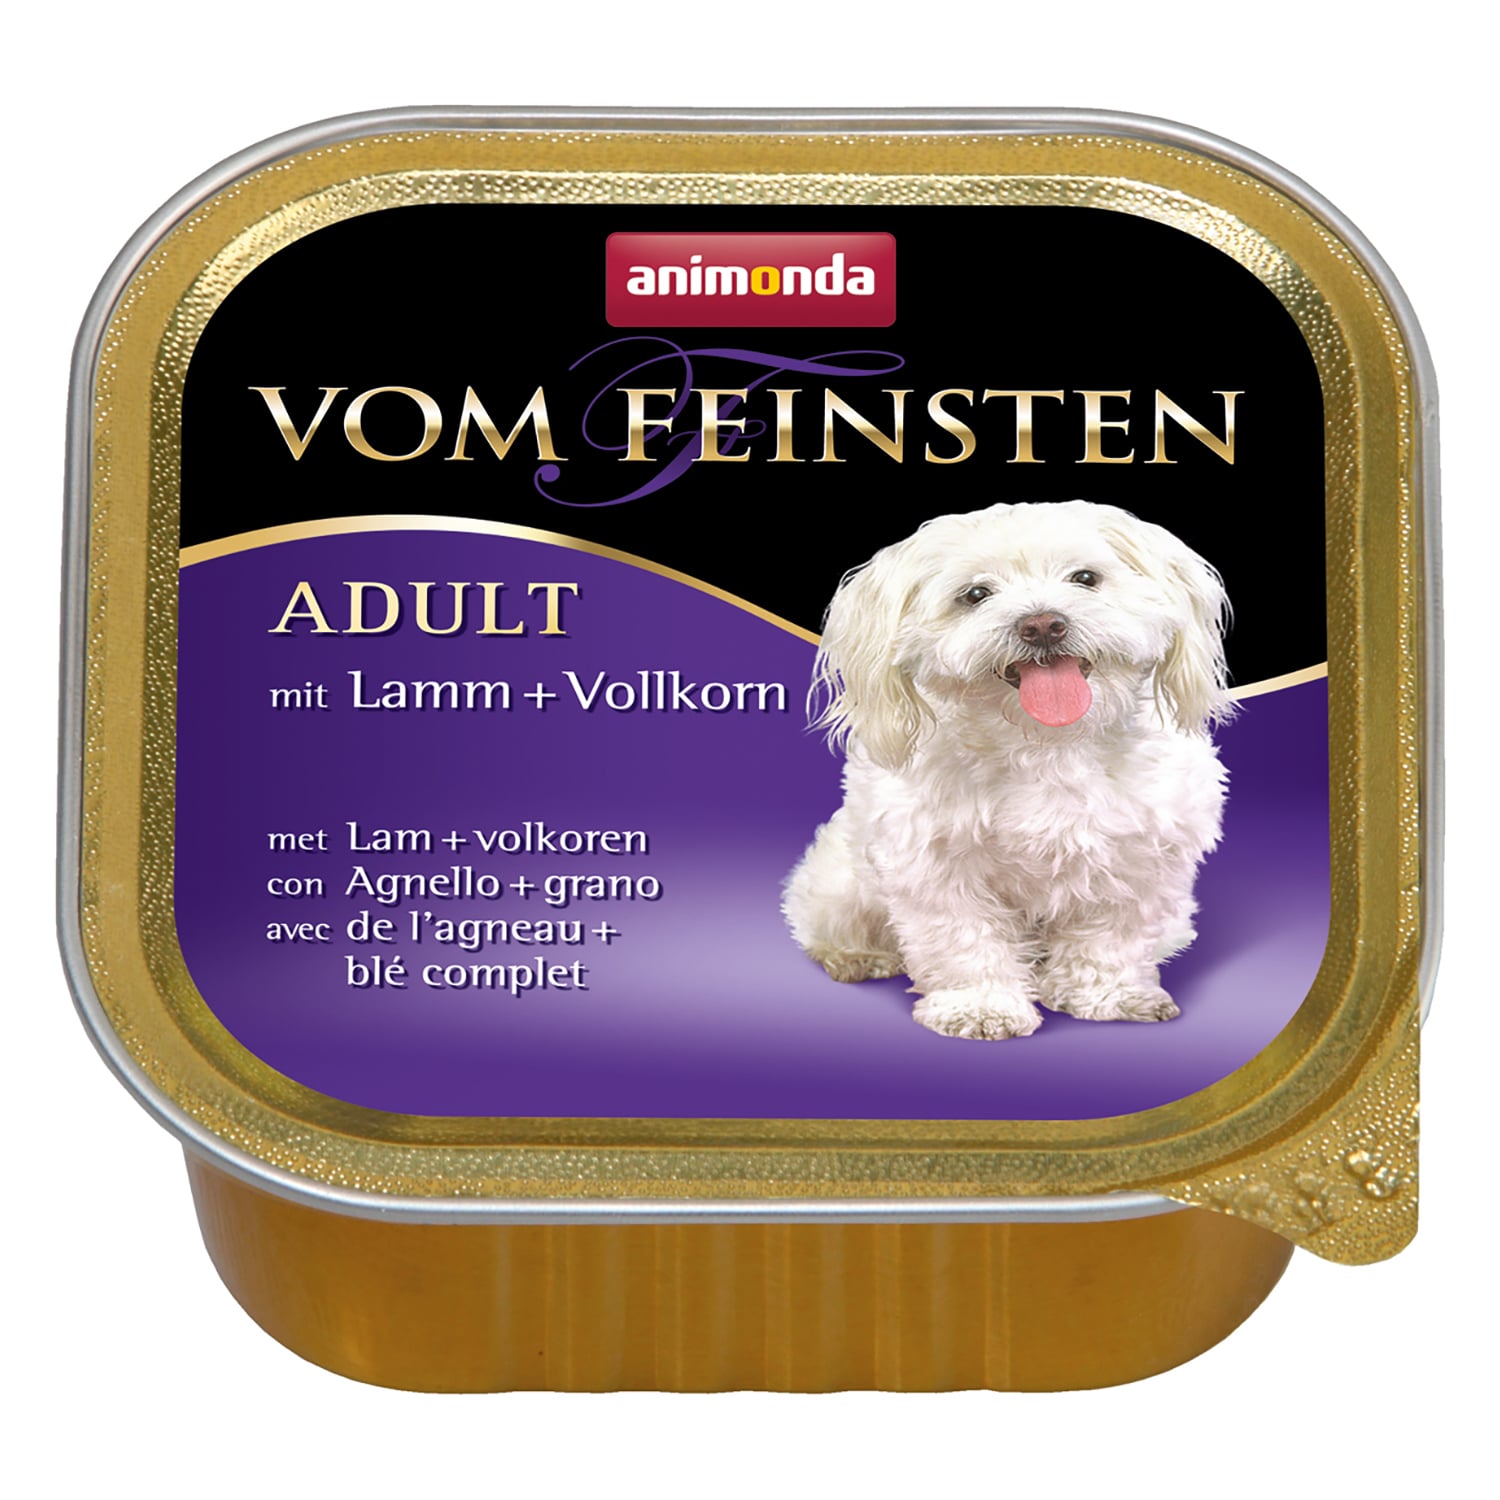 Vom Feinsten Adult консервы для собак старше 1 года, с ягненком и цельными зернами, Animonda